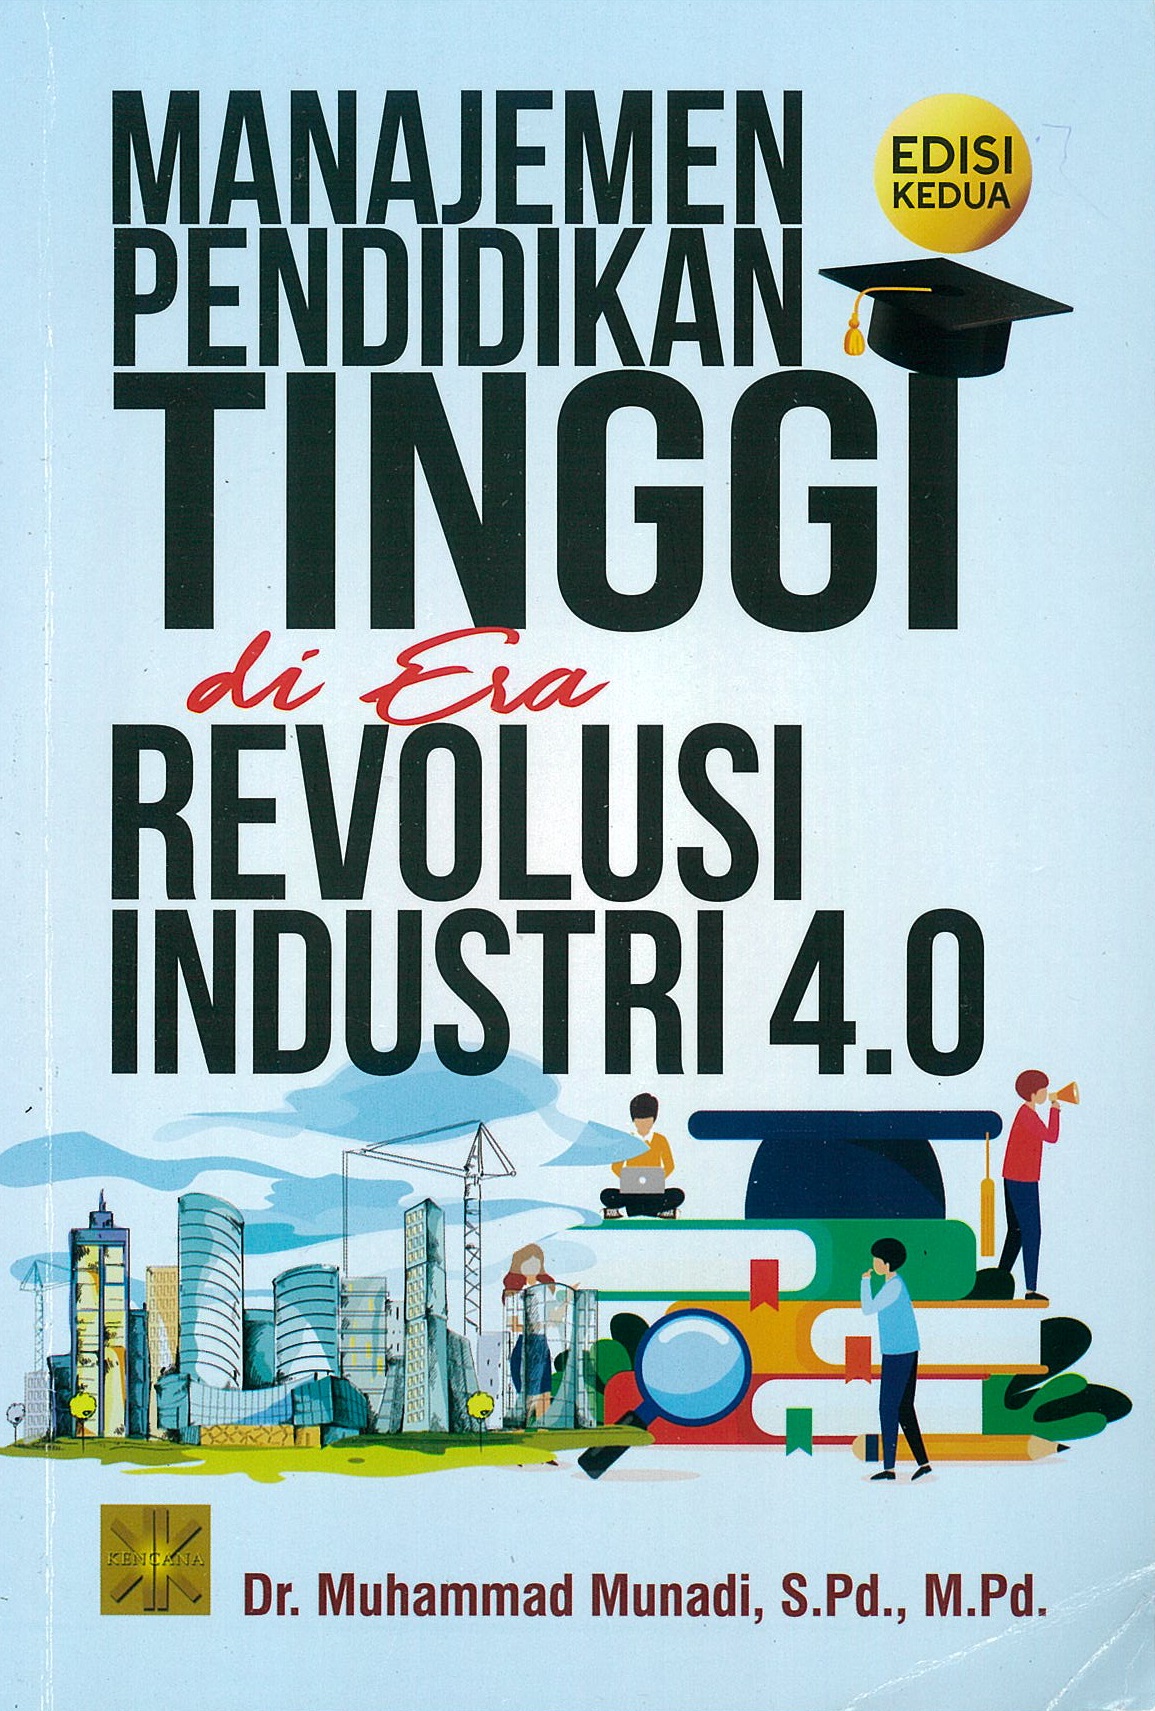 Manajemen pendidikan tinggi di era revolusi industri 4.0